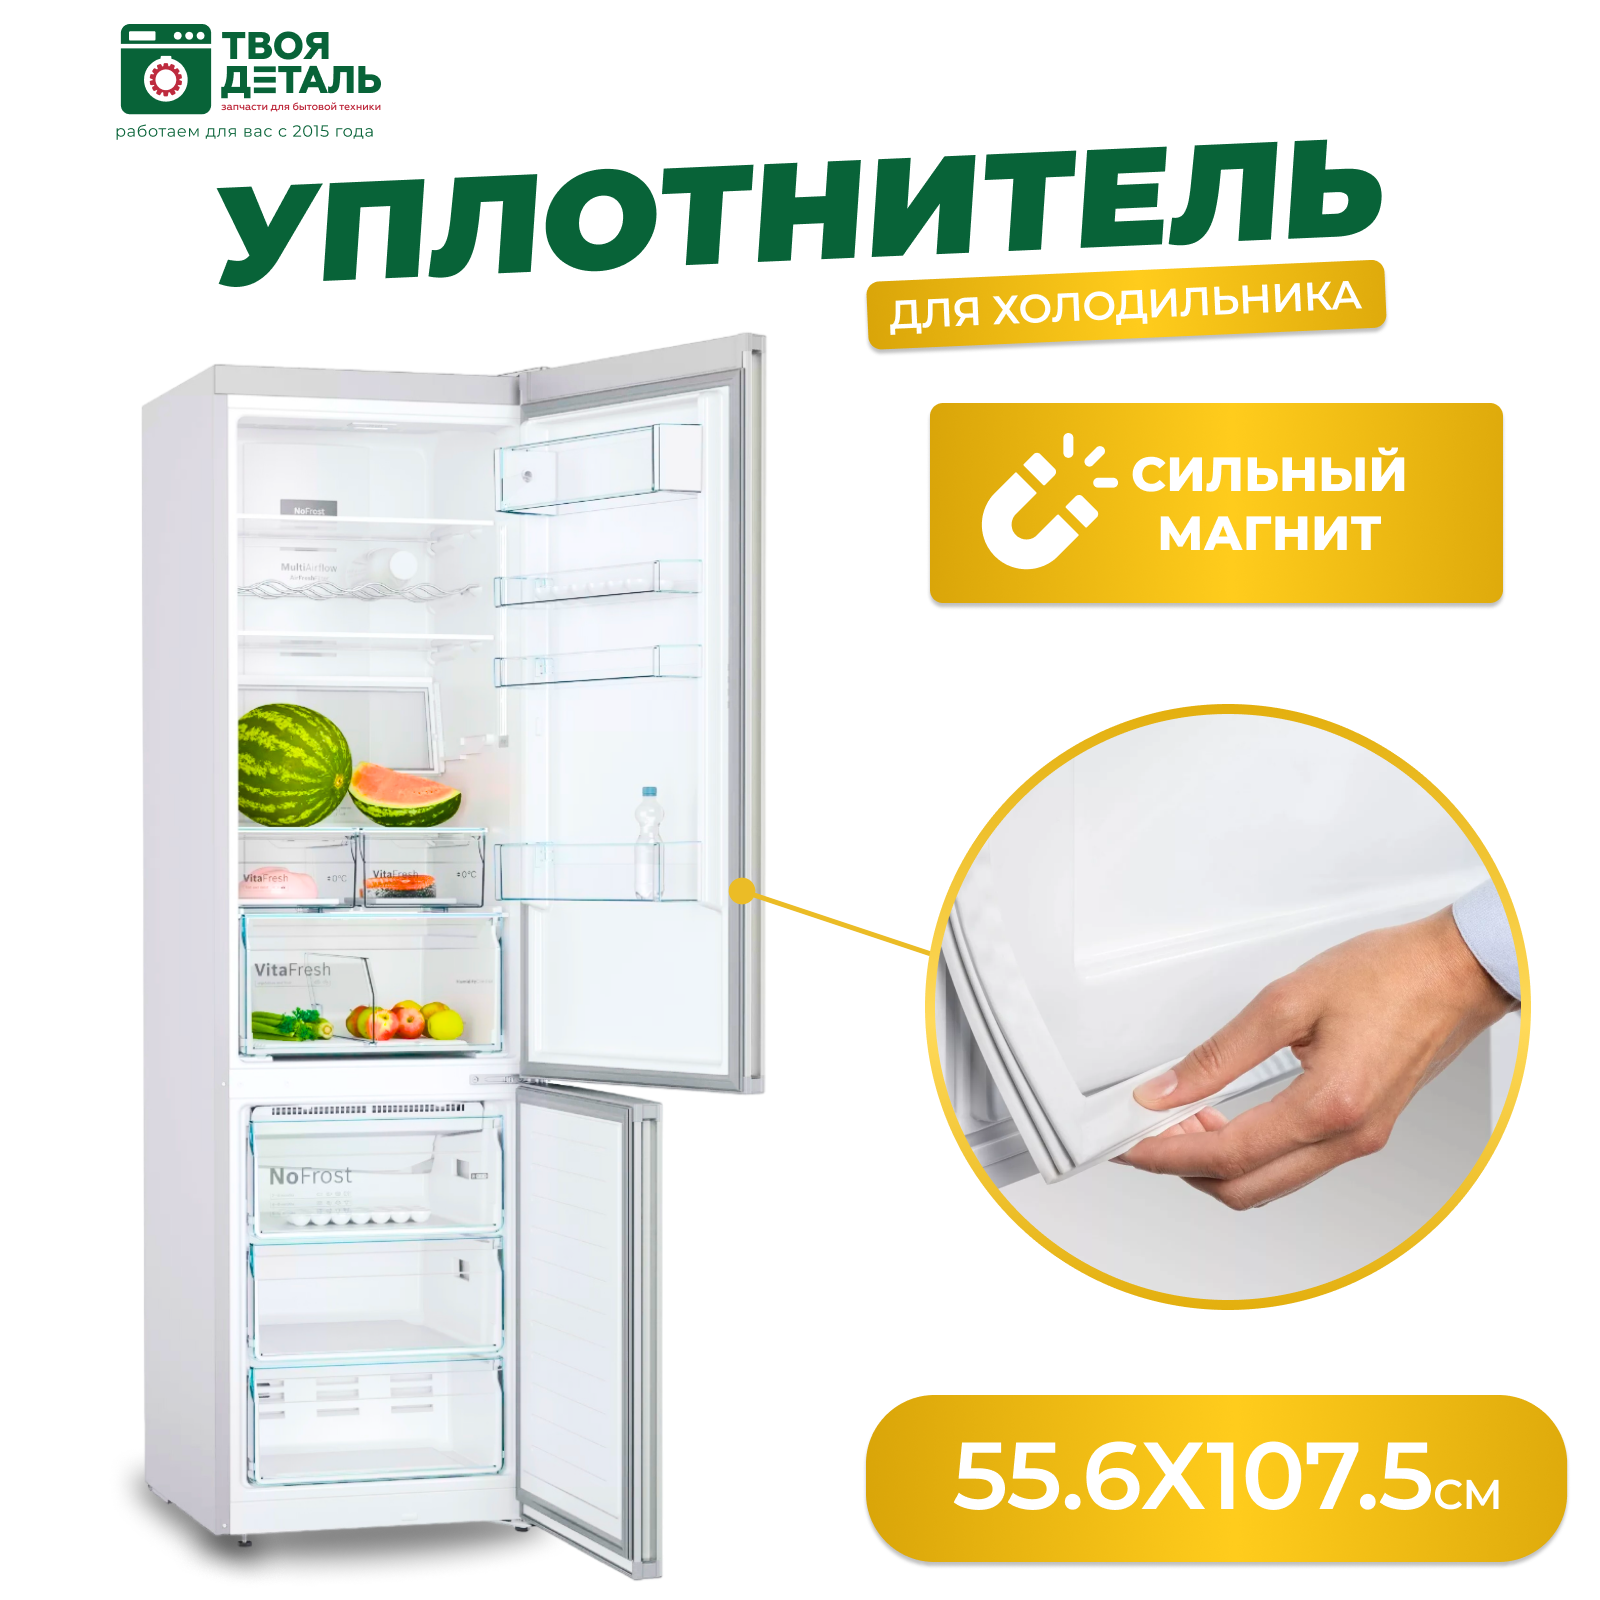 Уплотнитель (резинка двери) для холодильника 55,6х107,5 см